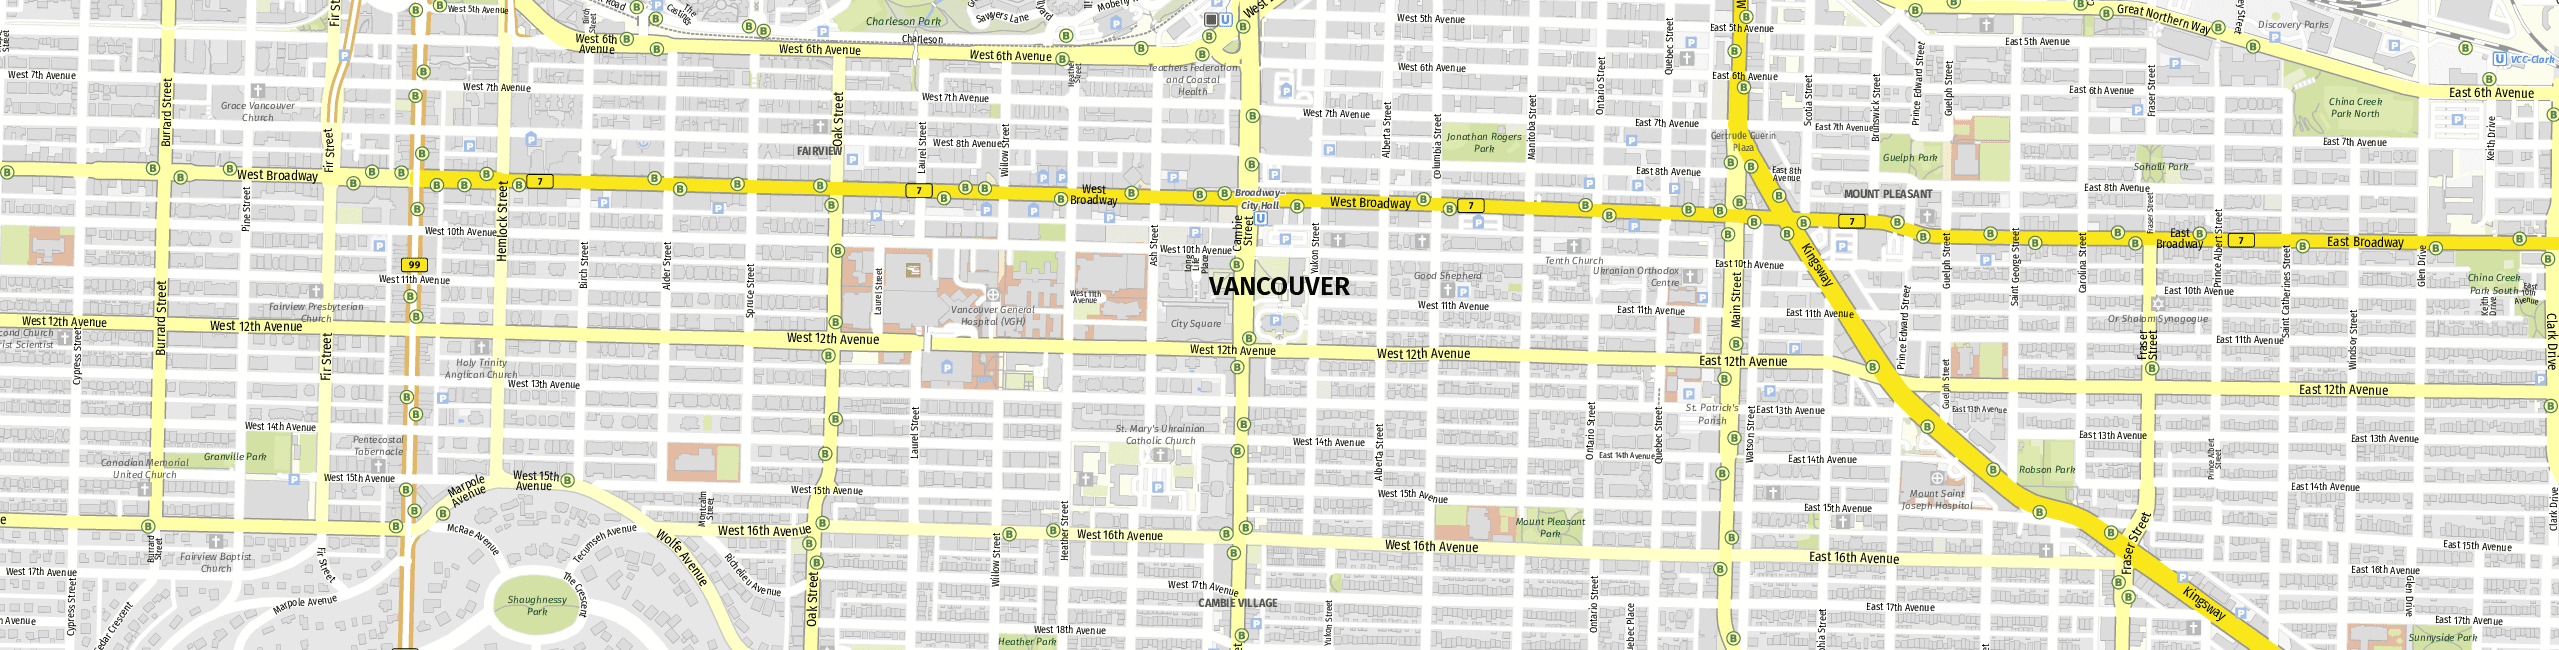 Stadtplan Vancouver zum Downloaden.